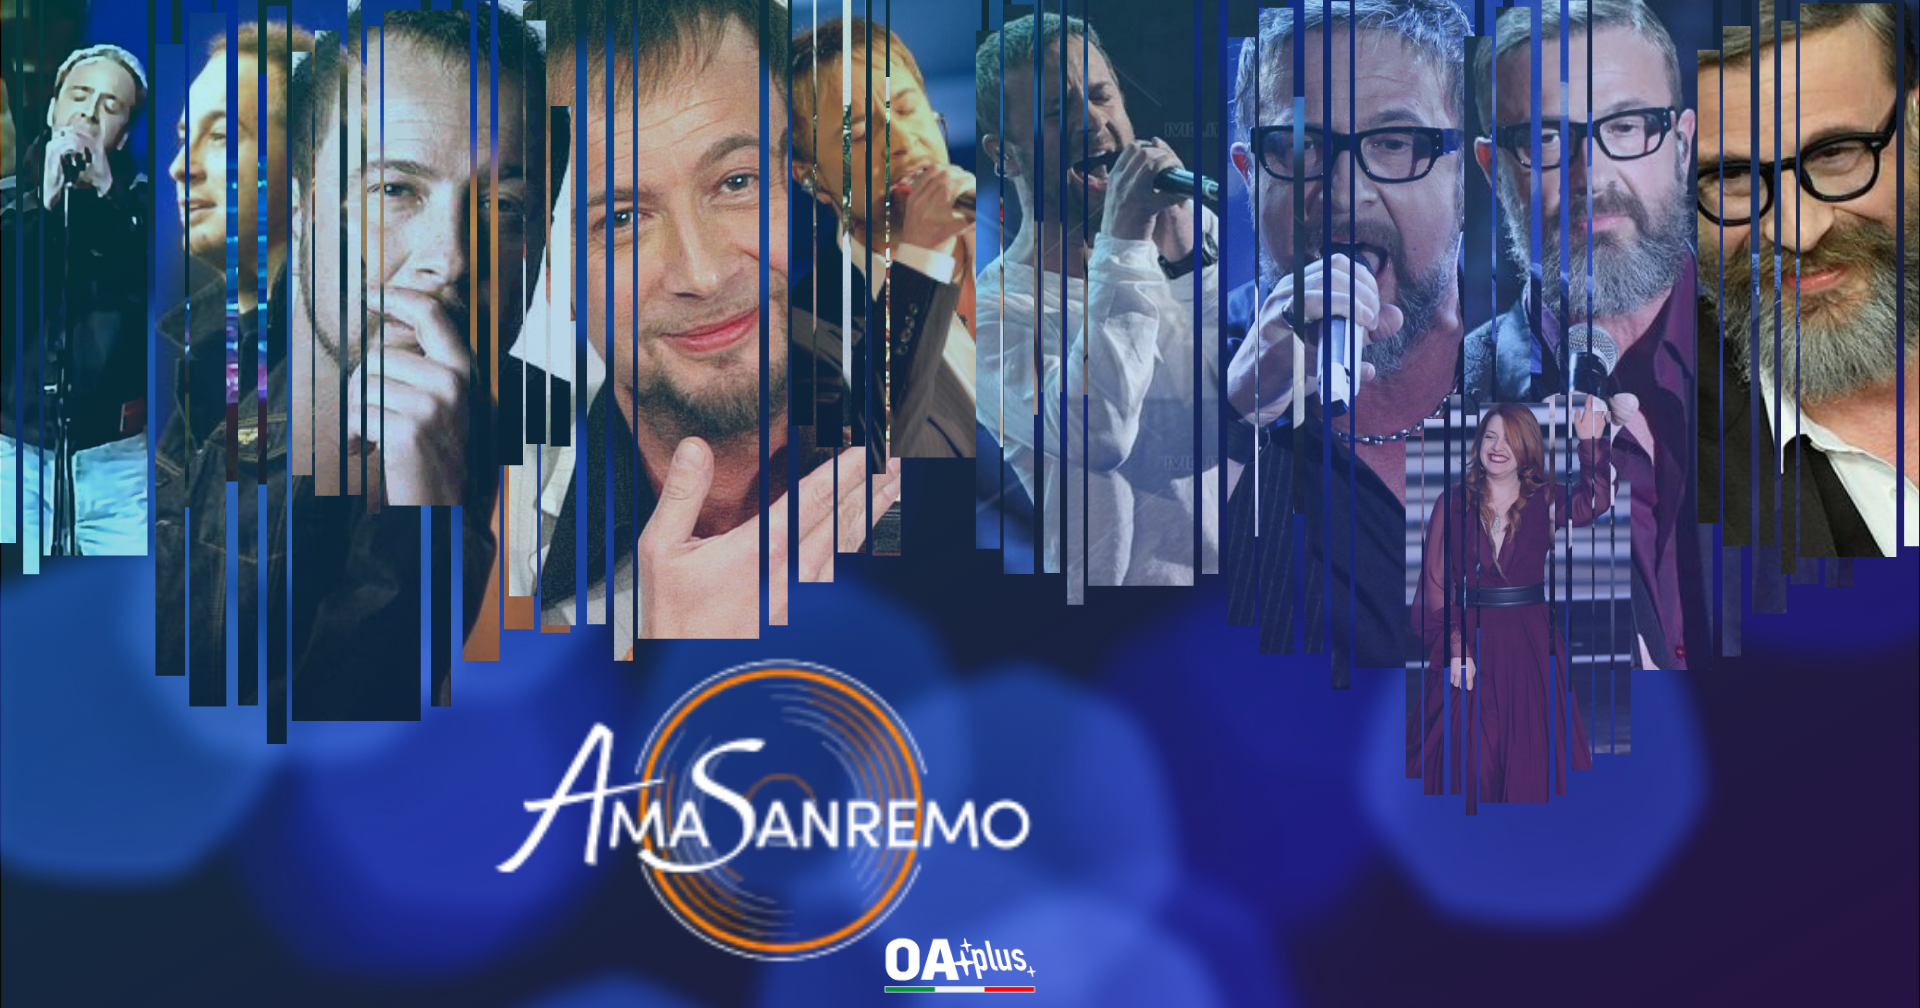 AmaSanremo: Marco Masini è l’ospite musicale della quarta puntata